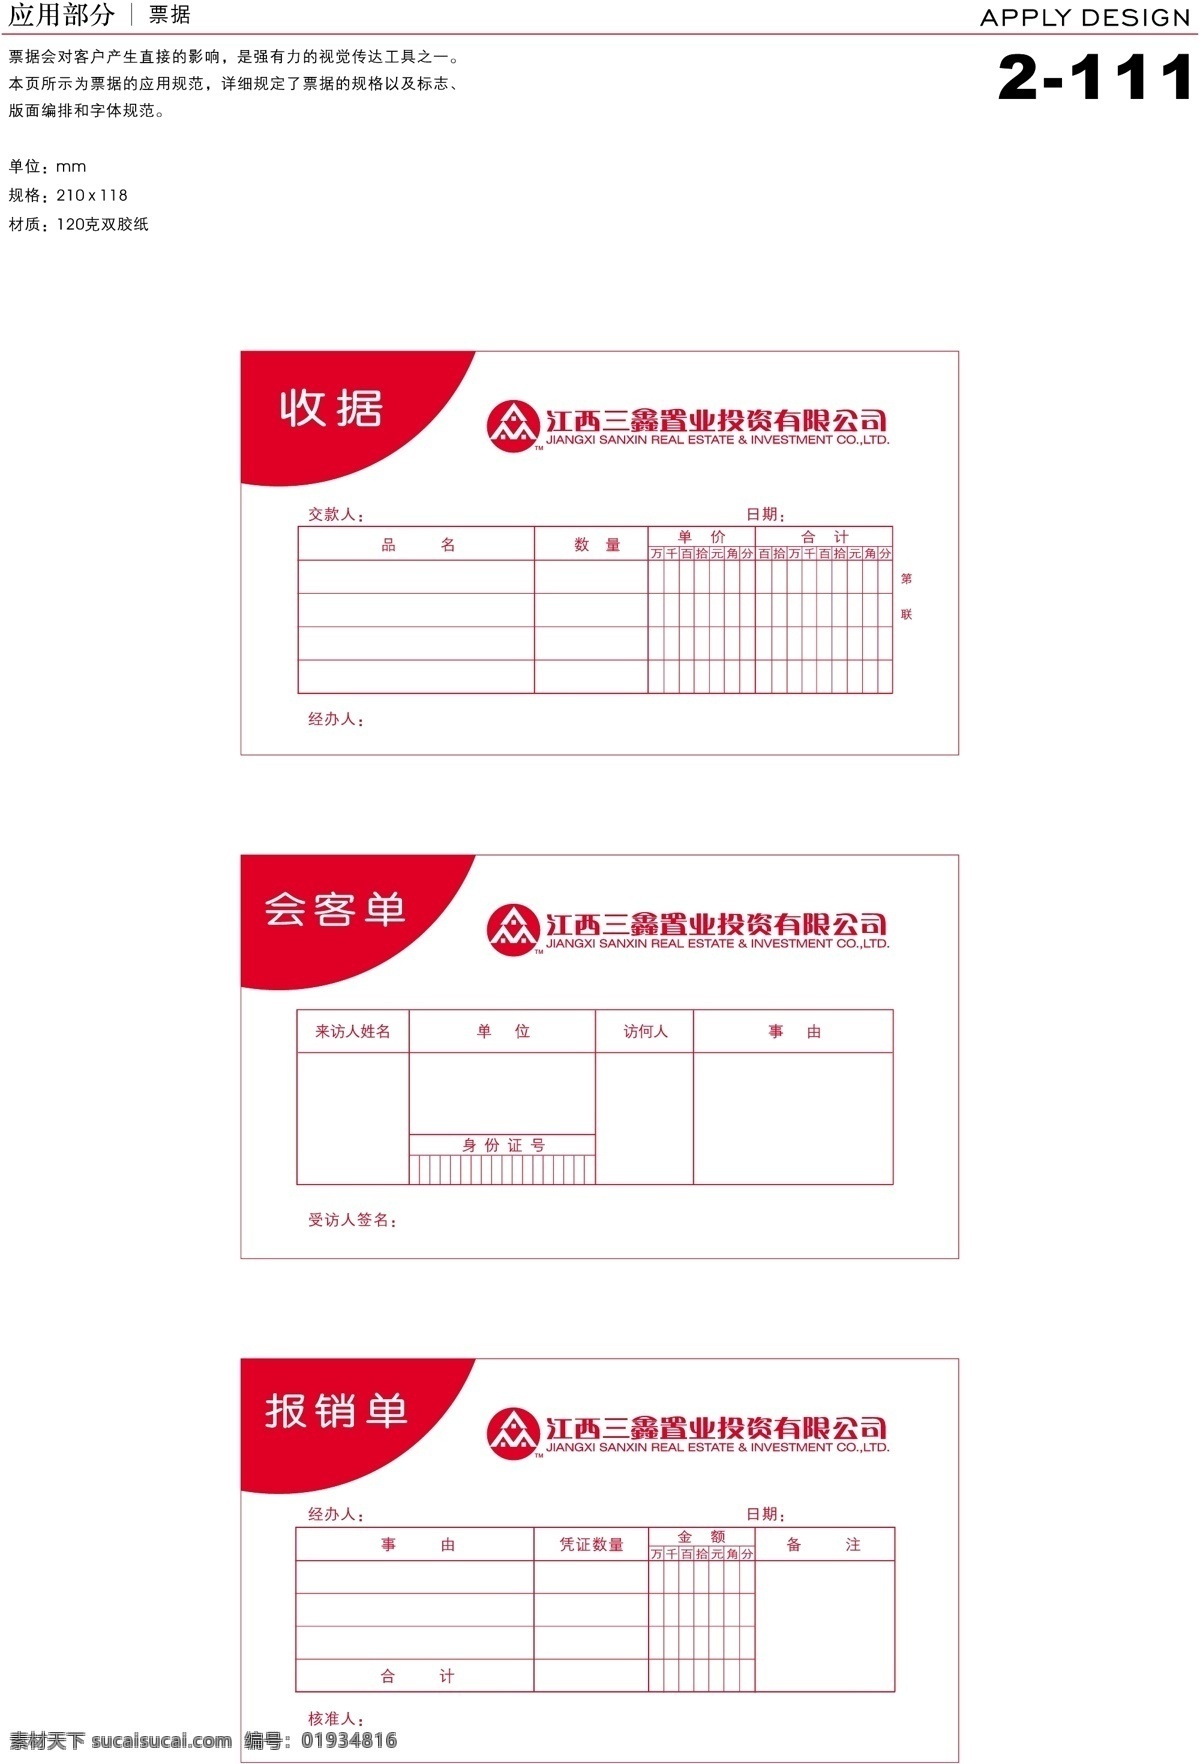 深圳 三鑫 置业 vi vi宝典 vi设计 办公用品 矢量 文件 应用1 海报 其他海报设计